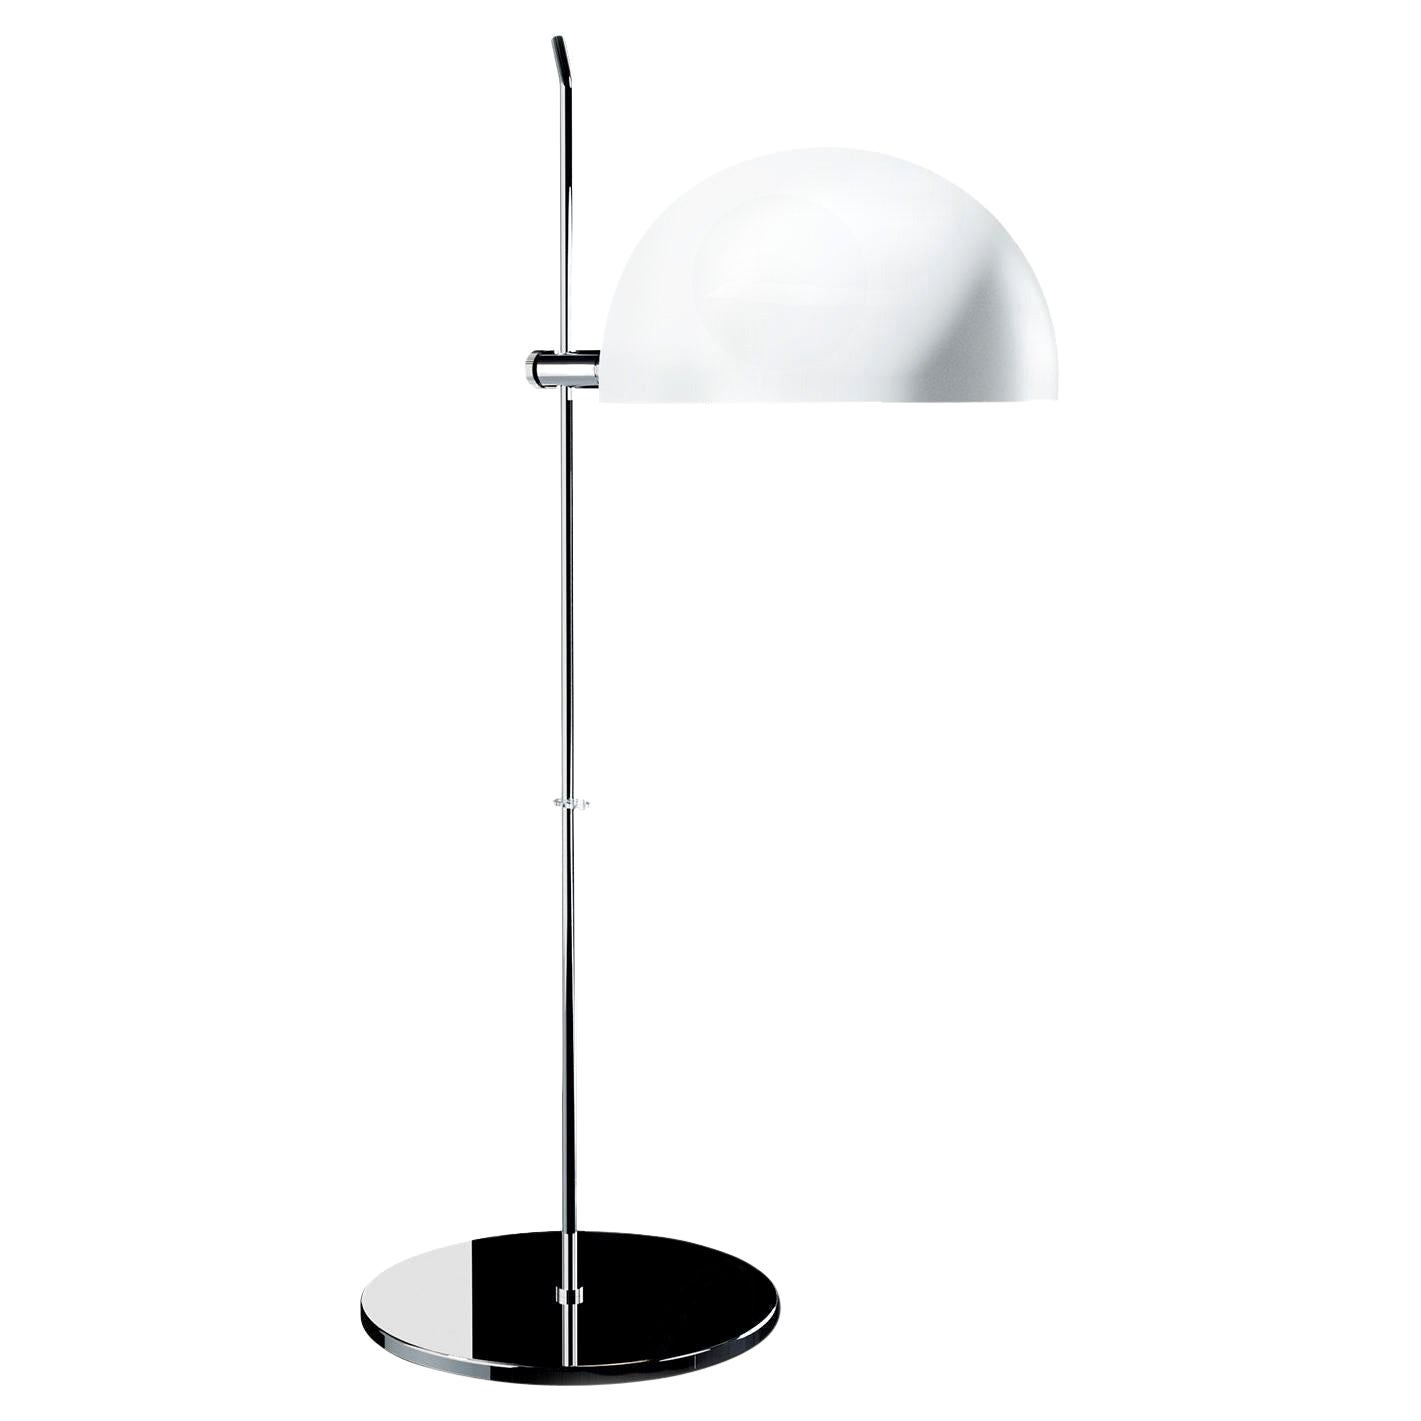 Alain Richard 'A21' Desk Lamp in White for Disderot